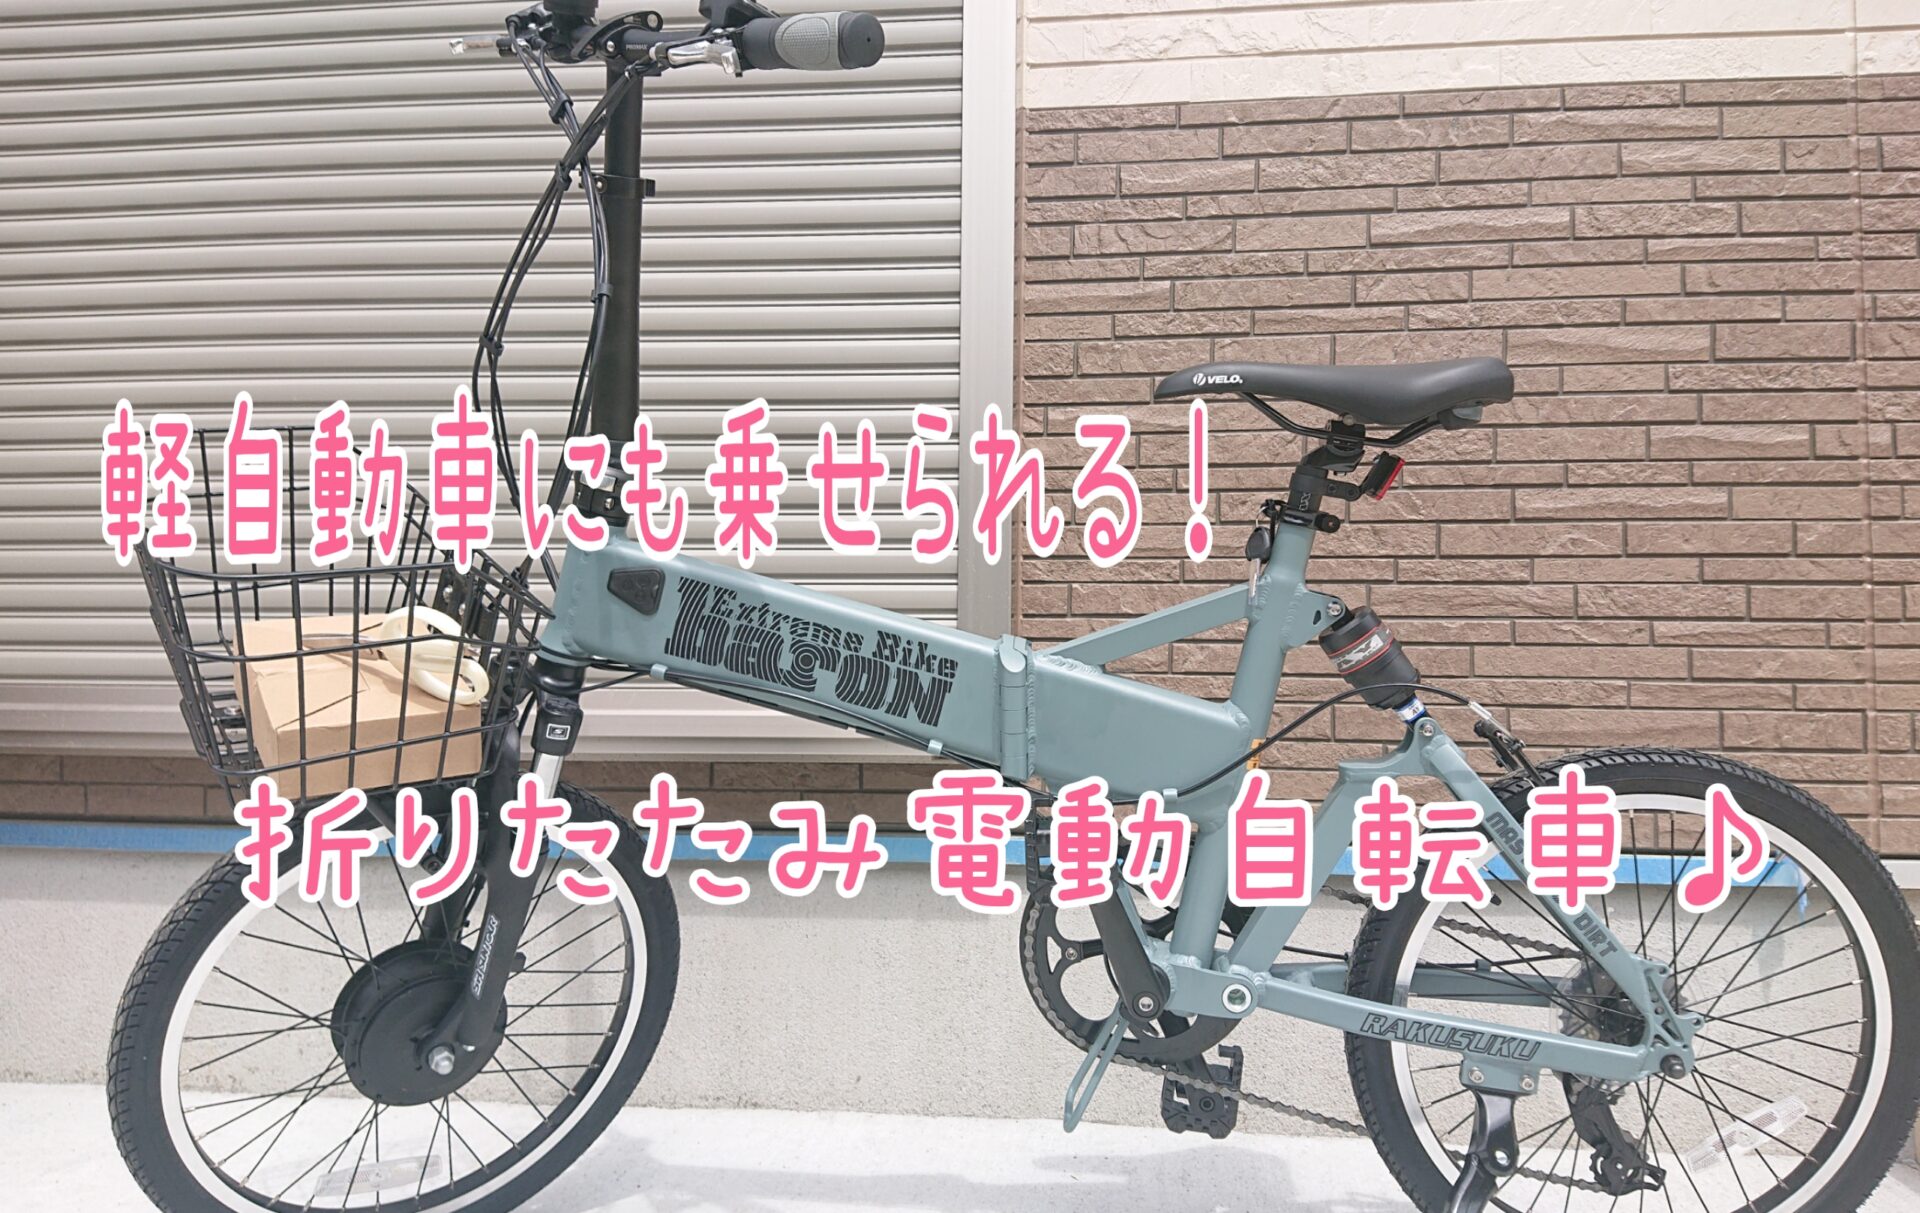 80%OFF!】 BARON-X20 折り畳み電動自転車 バッテリー 7.8ah 38km